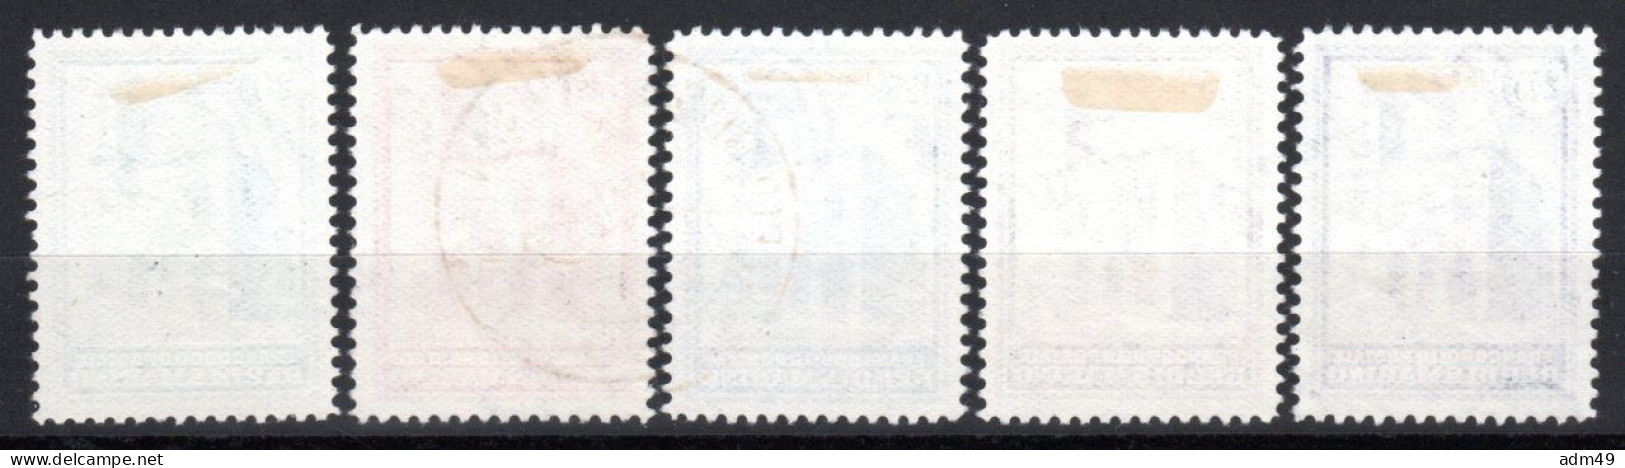 SAN MARINO, 1932, Einweihung Neues Postgebäude, Gestempelt - Used Stamps